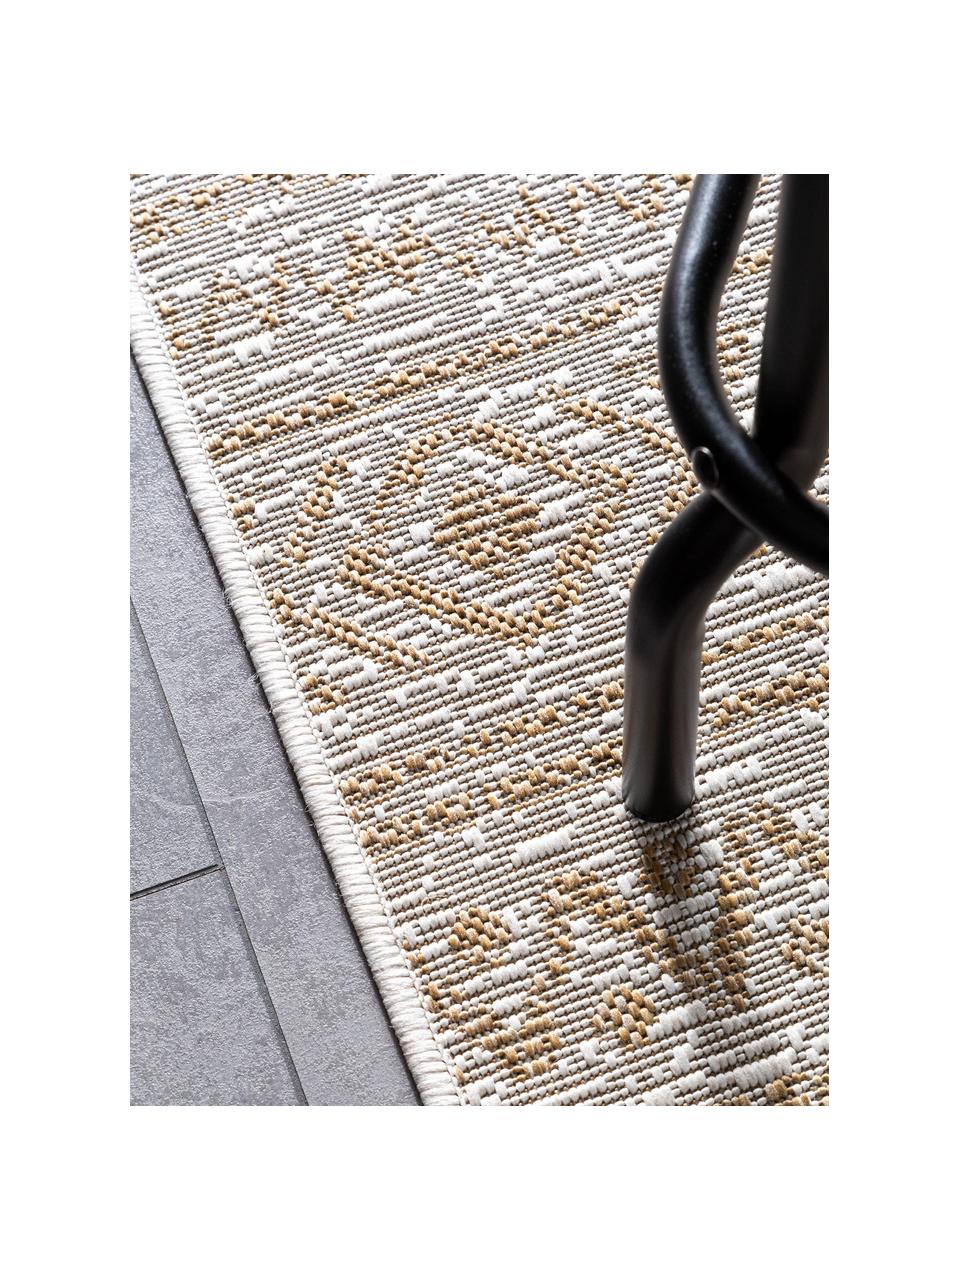 In- & Outdoor-Teppich Cleo mit Ethno-Muster, 90% Polypropylen, 10% Polyester, Beige- und Brauntöne, B 240 x L 340 cm (Größe XL)